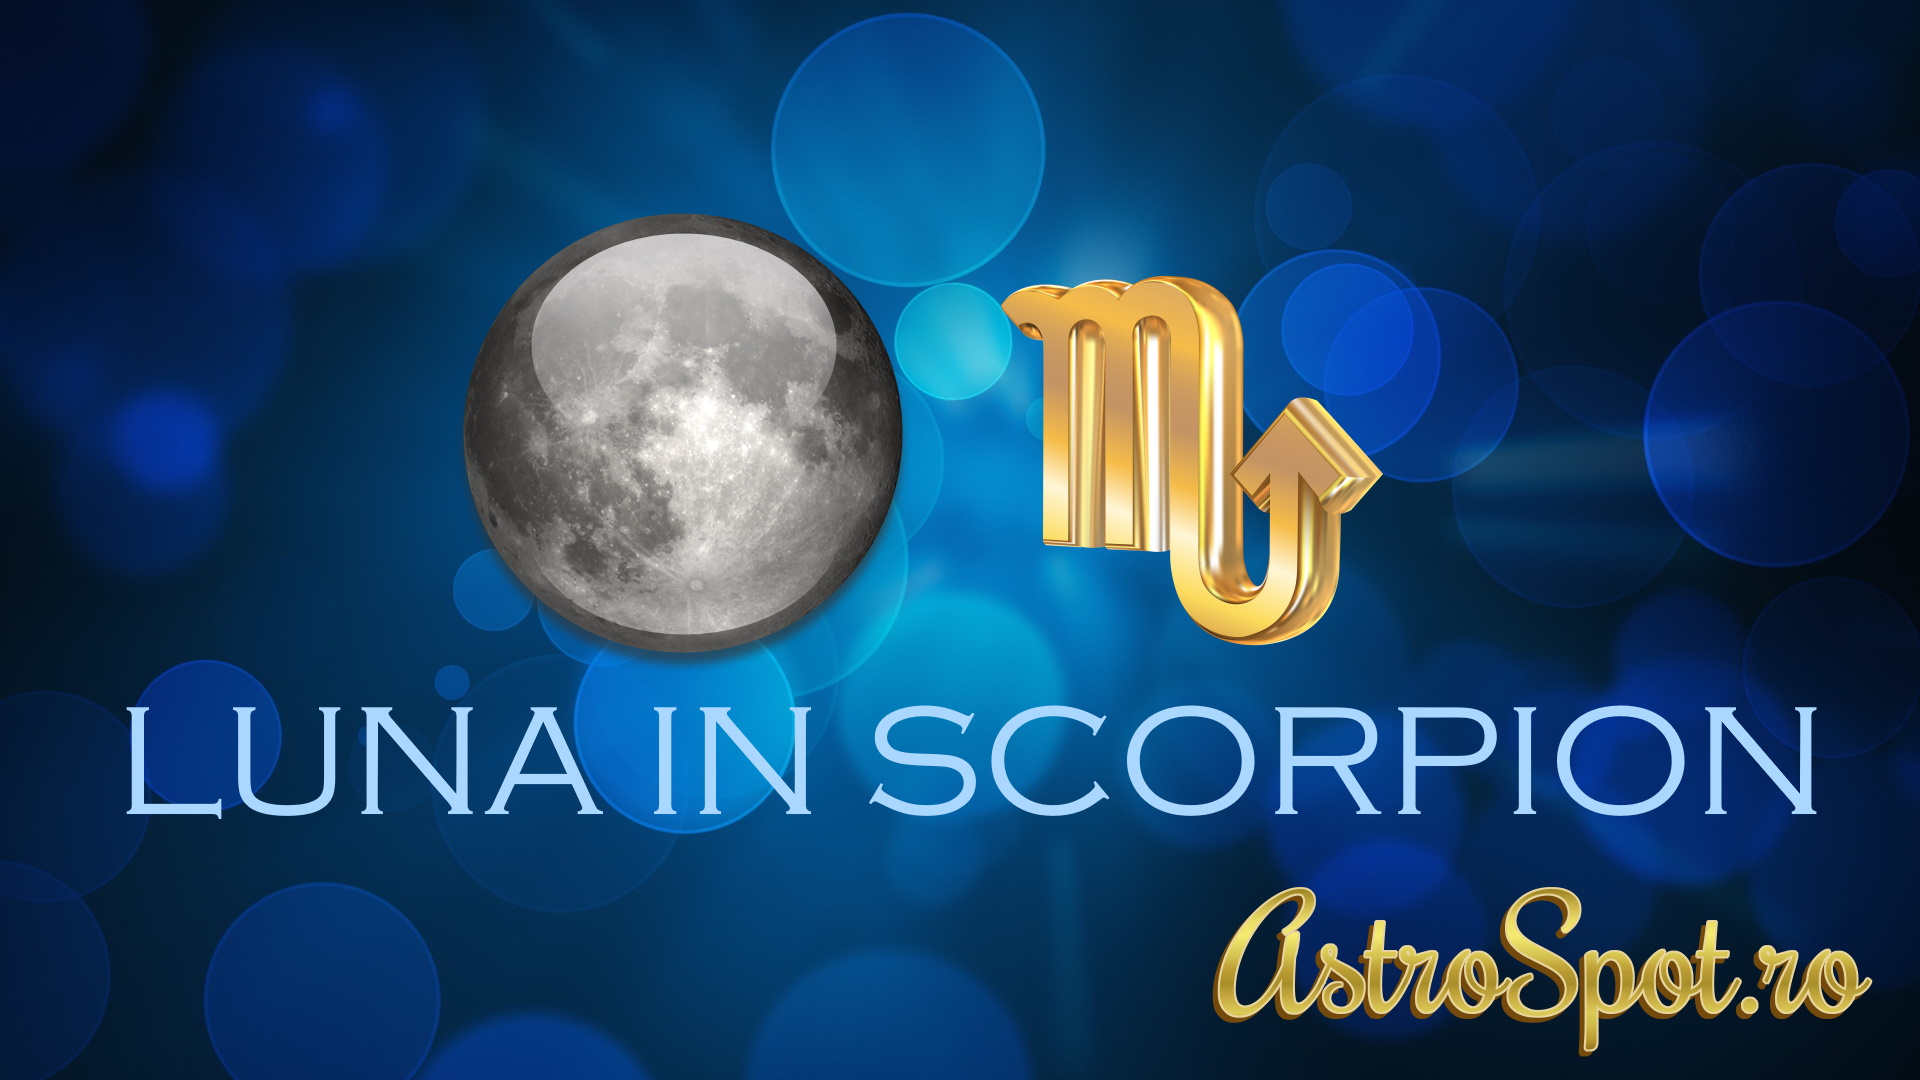 Luna in Scorpion